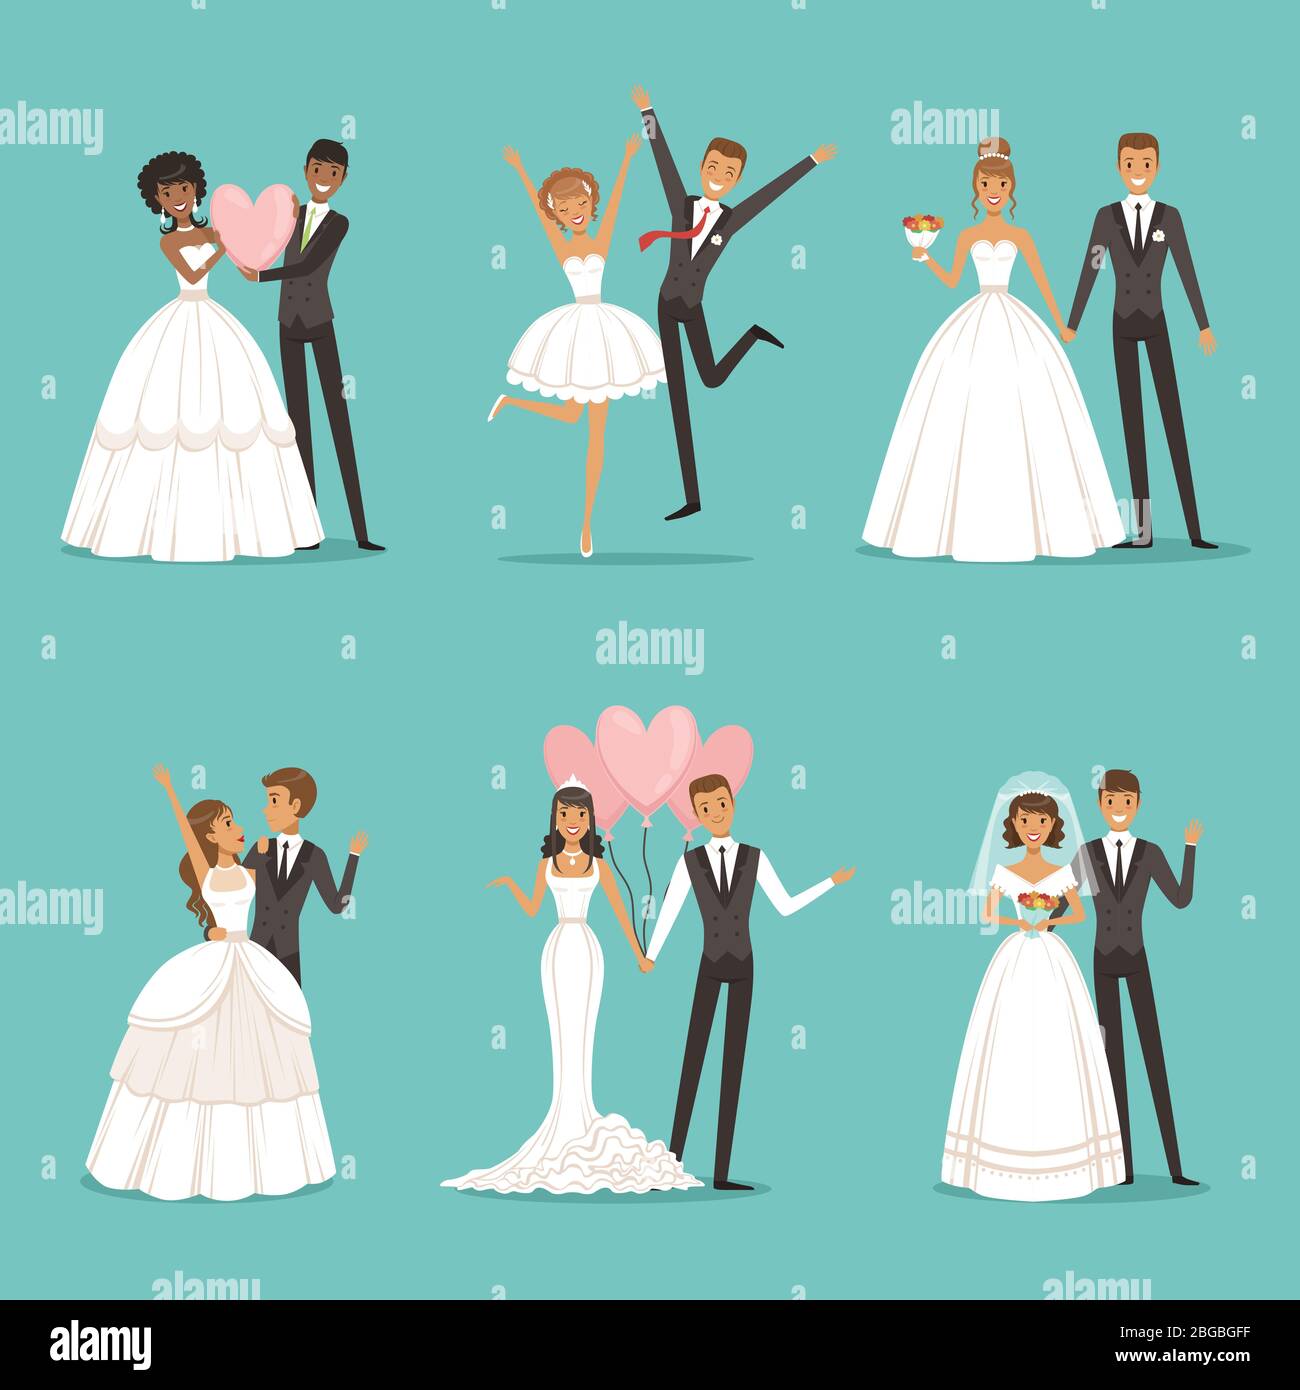 Jeu de caractères de couple marié. Motif mascotte de mariage dans un style de dessin animé. Mariées en beaux vêtements Illustration de Vecteur